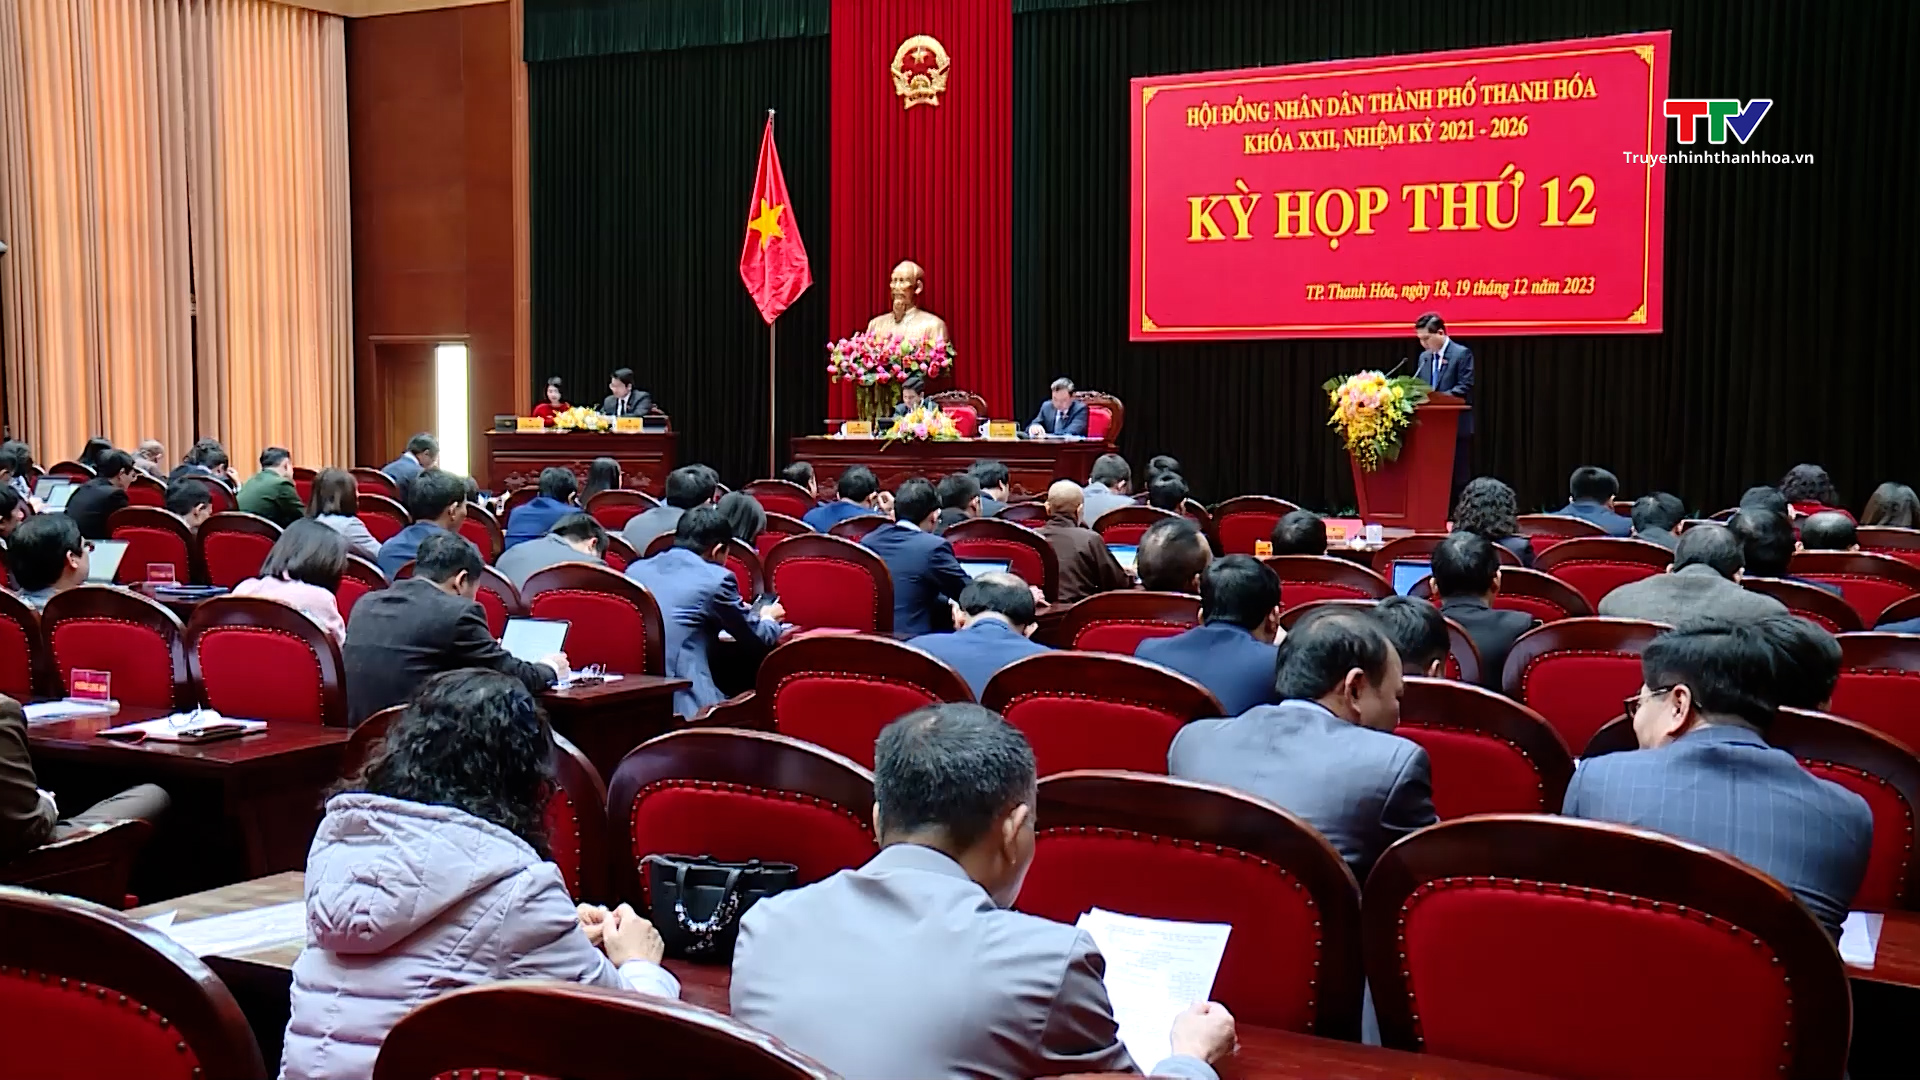 Khai mạc kỳ họp thứ 12 Hội đồng nhân dân thành phố Thanh Hóa khóa XXII, nhiệm kỳ 2021 - 2026- Ảnh 3.